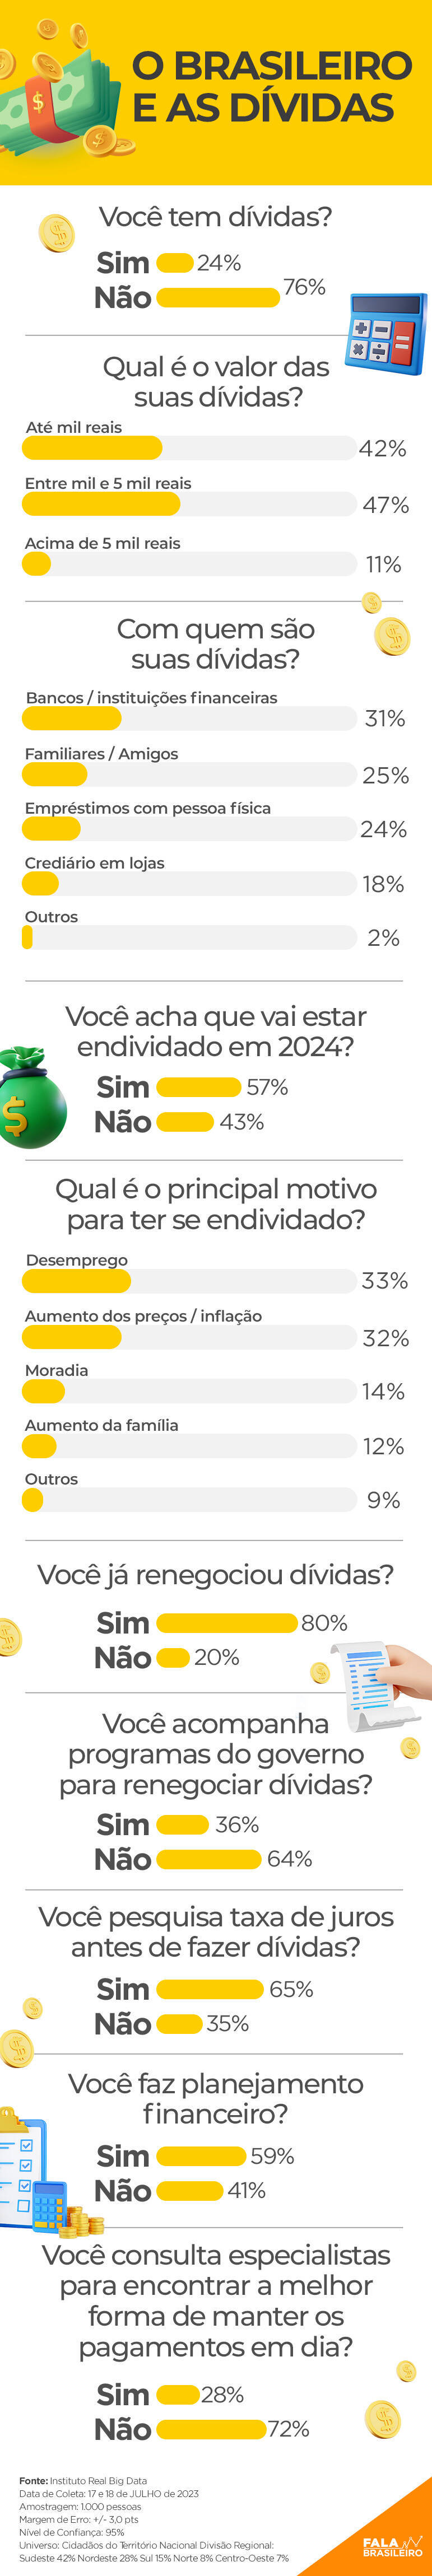 Veja o que os brasileiros pensam sobre as dívidas e o planejamento financeiro